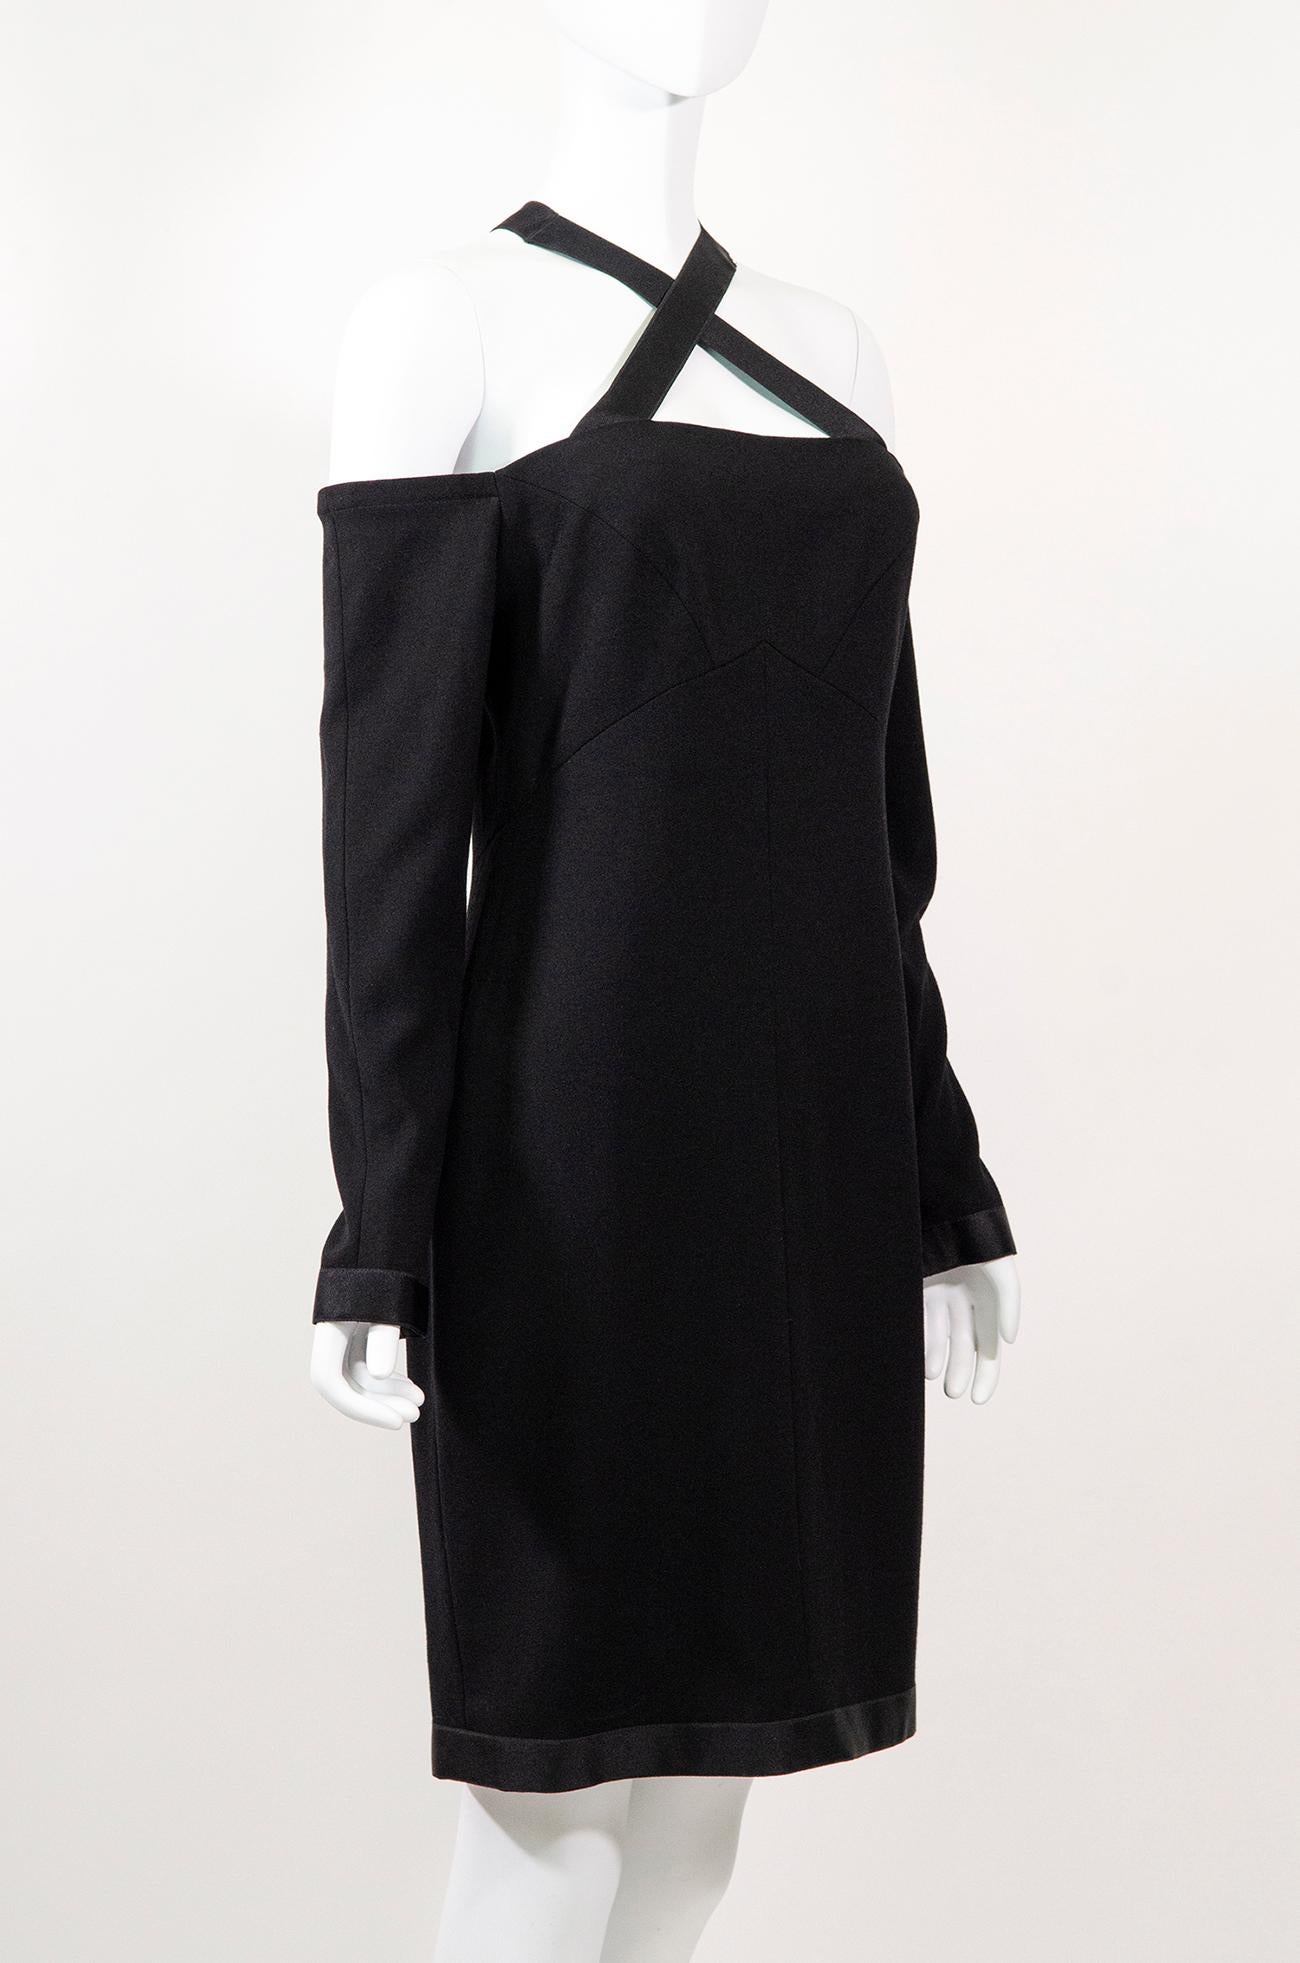 Das perfekte kleine Schwarze im Vintage-Look von Chanel. Diese klassische Schönheit stammt aus den 1990er Jahren und wurde von Karl Lagerfeld entworfen.

Dieses elegante Chanel-Kleid ist ein unglaublicher Klassiker, der nie aus der Mode kommen wird.